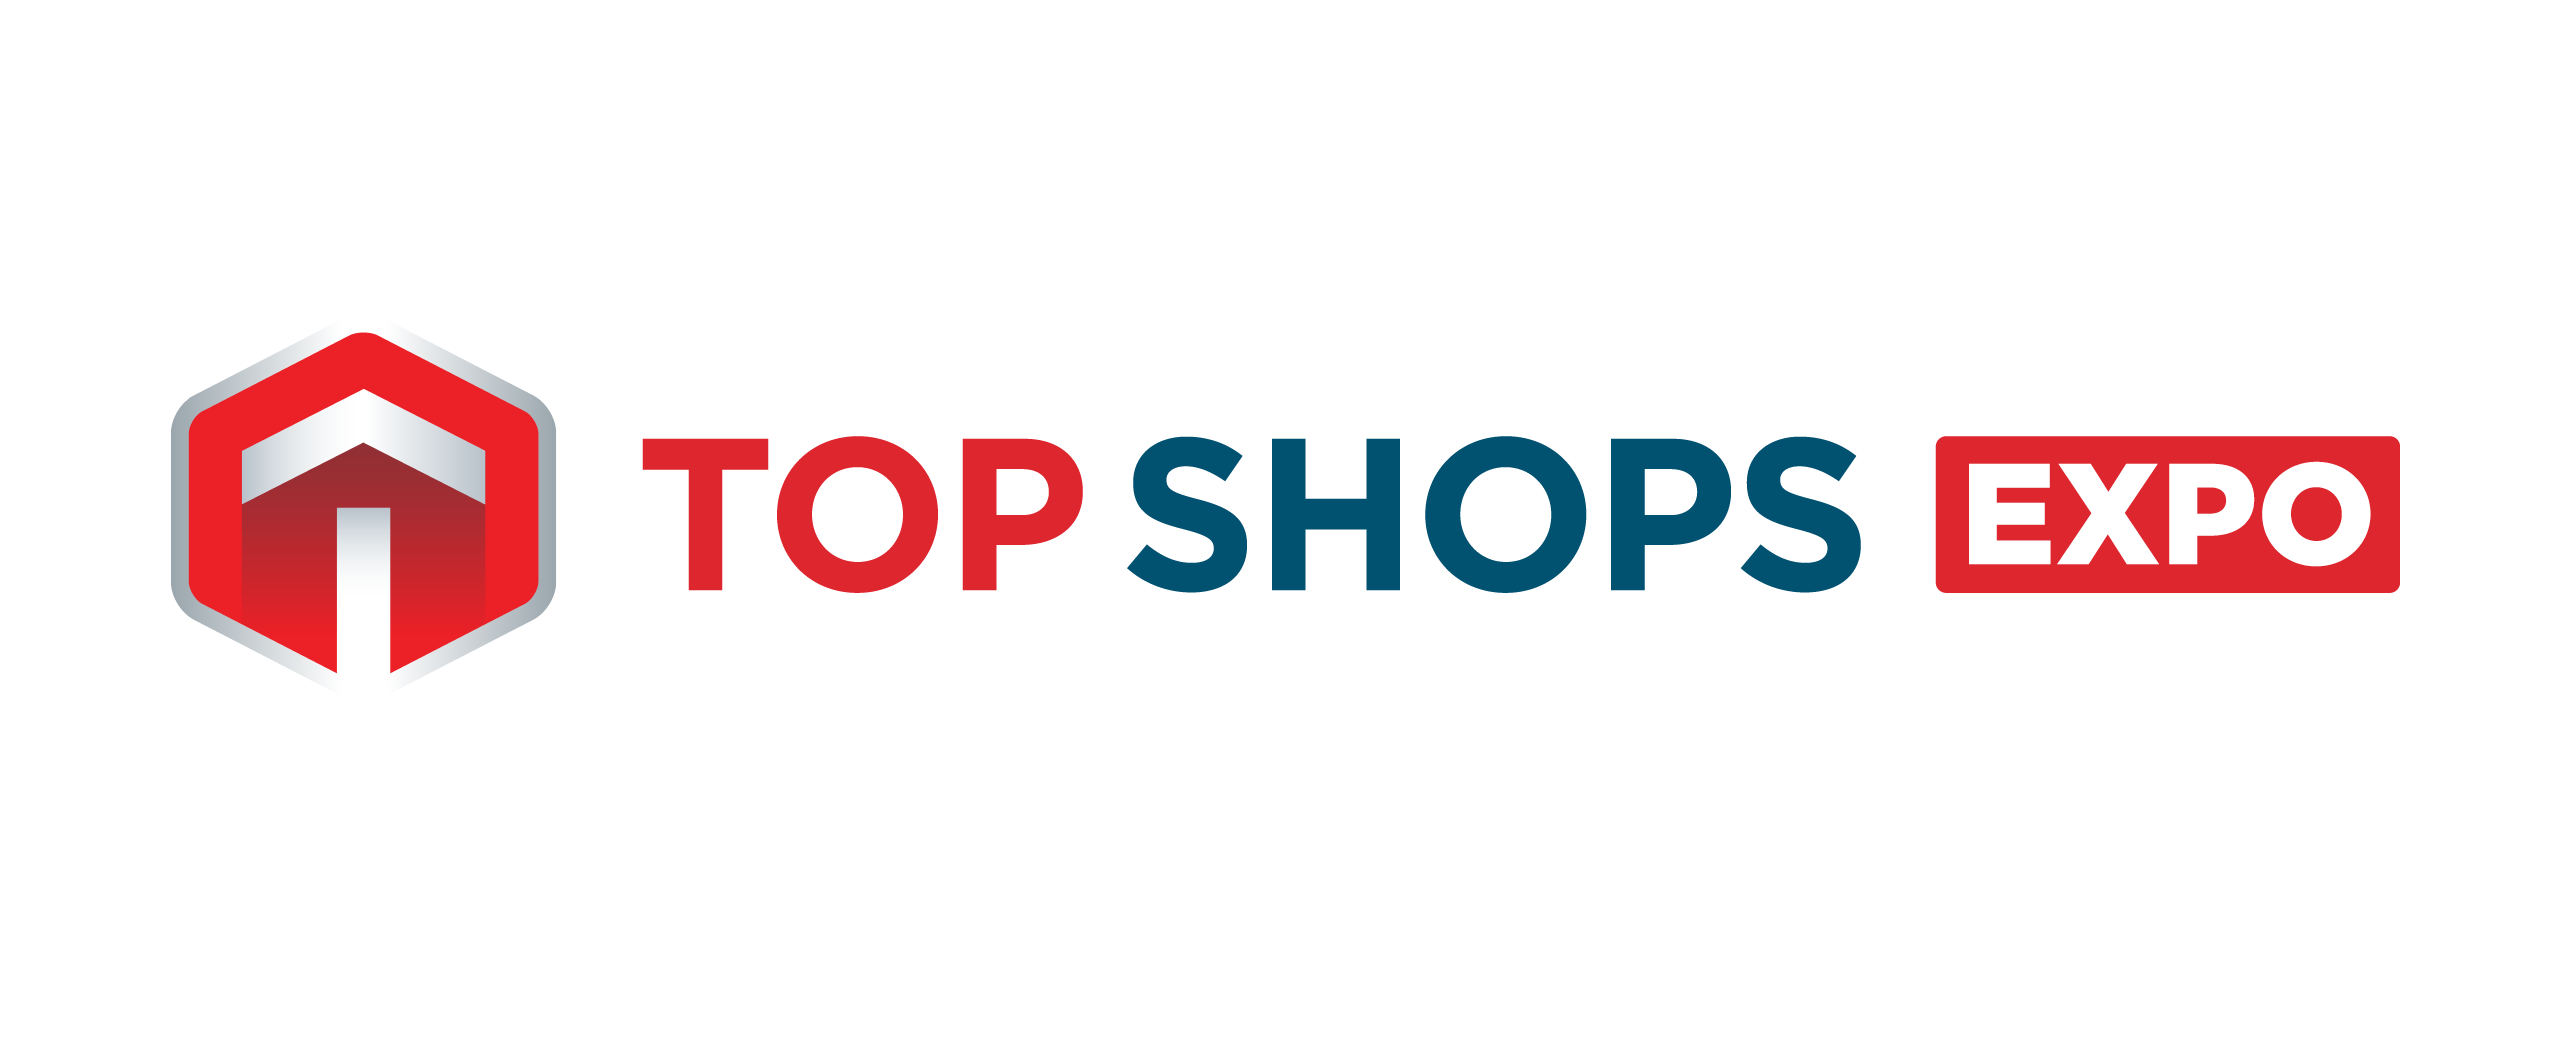 Top Shops Expo